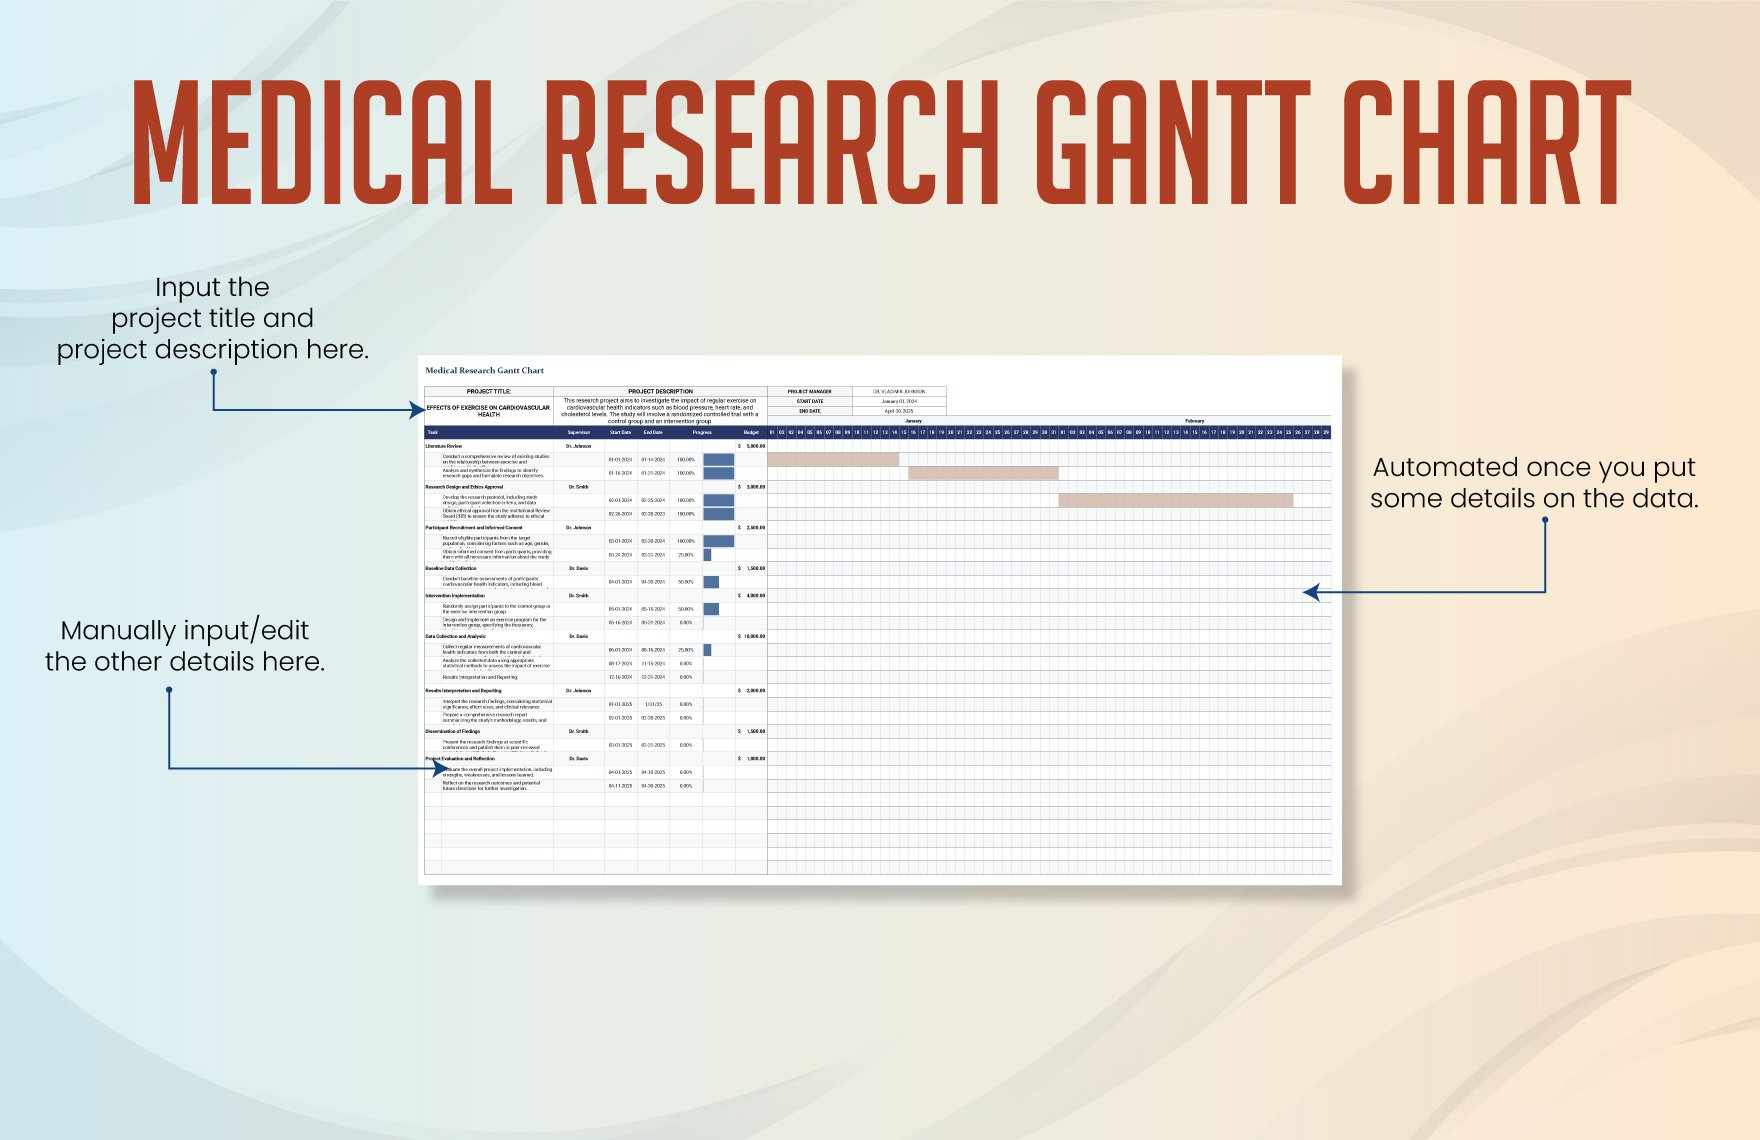 Medical Research Gantt Chart Template